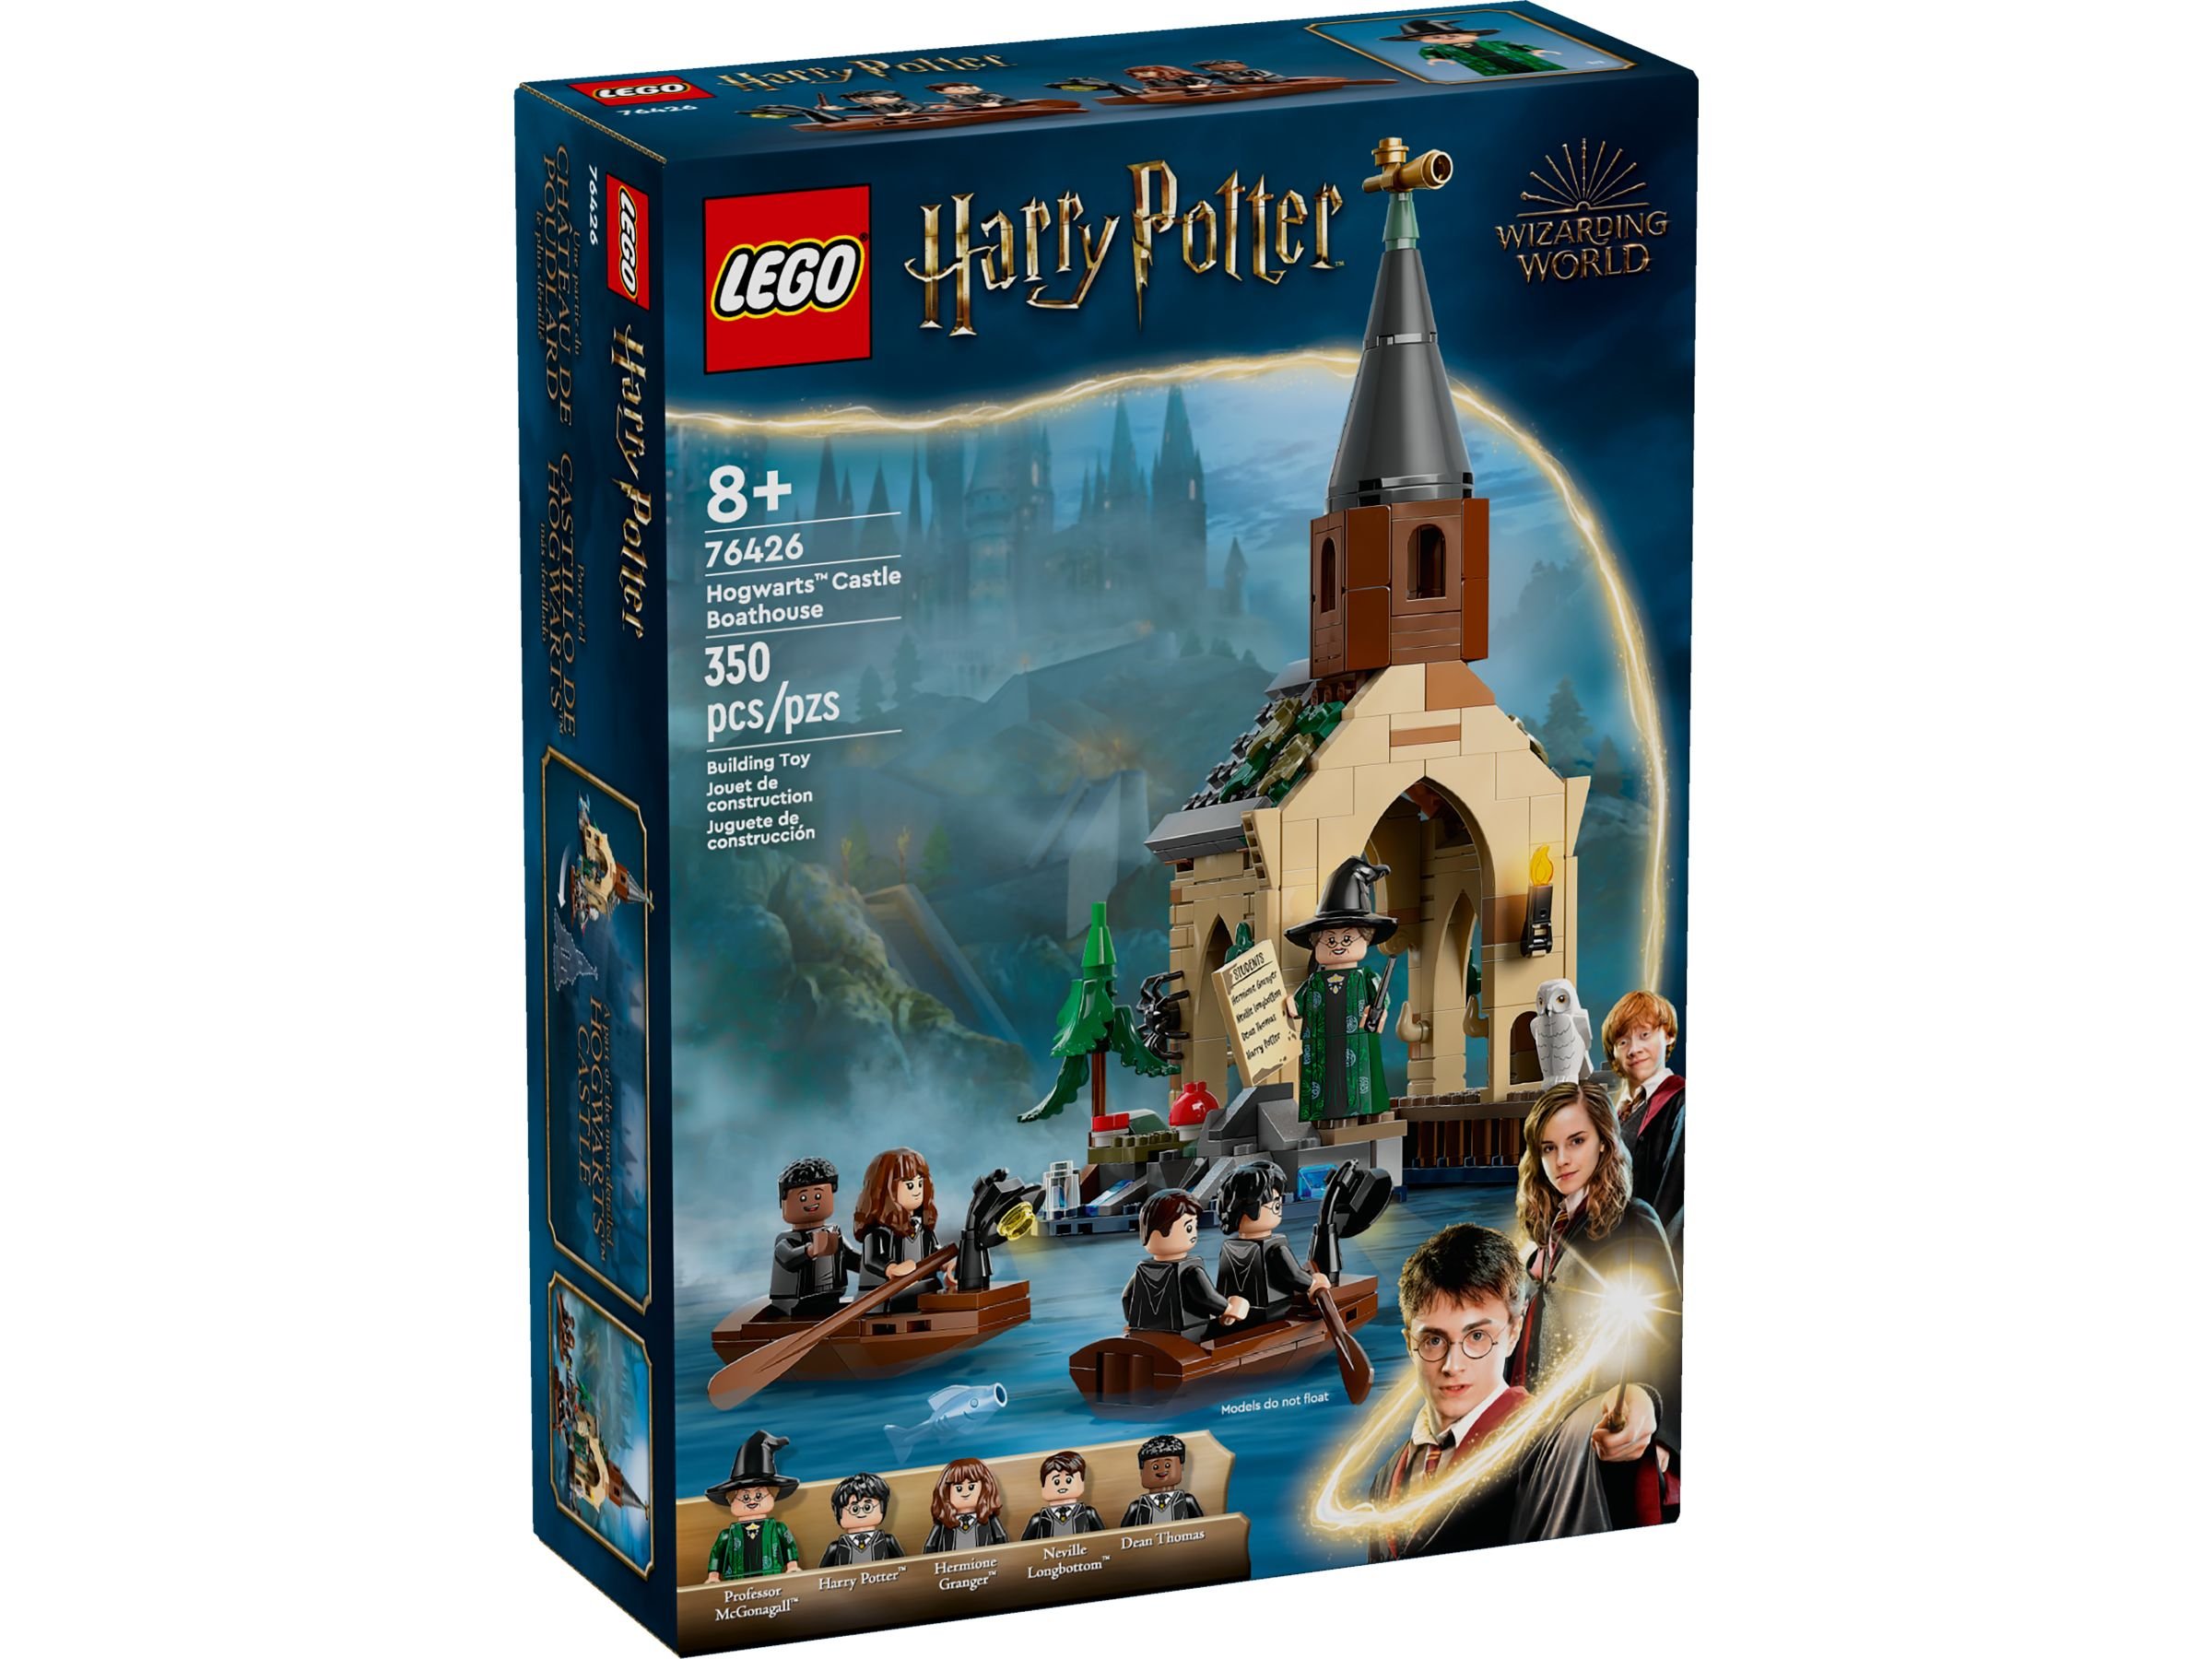 LEGO Harry Potter 76426 Bootshaus von Schloss Hogwarts™ LEGO_76426_Box1_v39.jpg